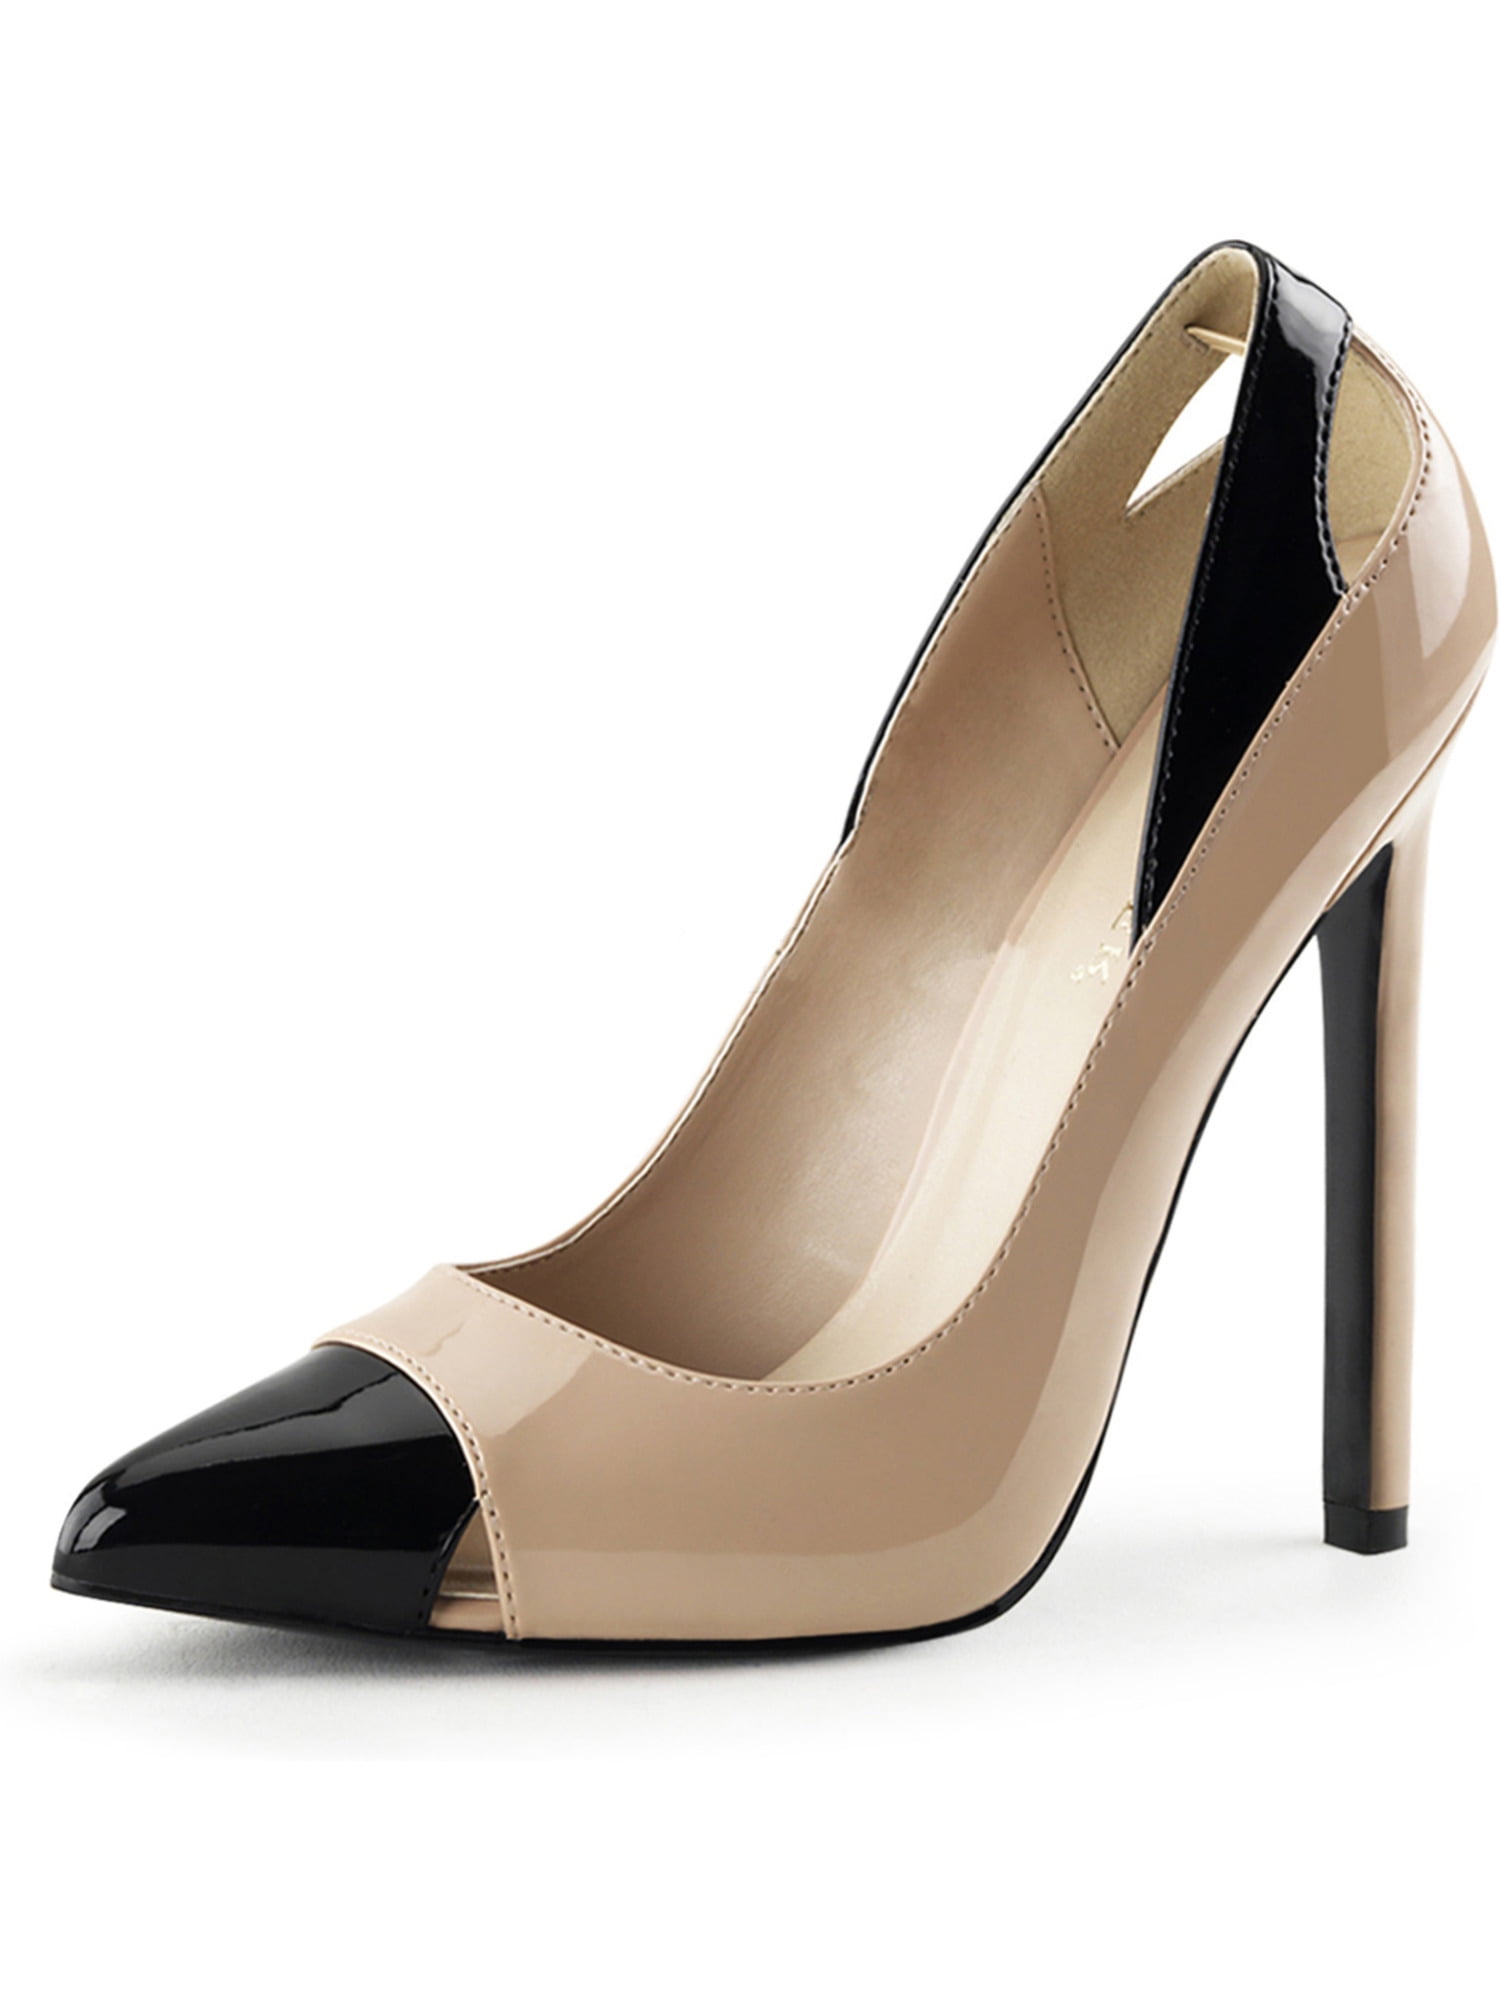 5 inch black stiletto heels